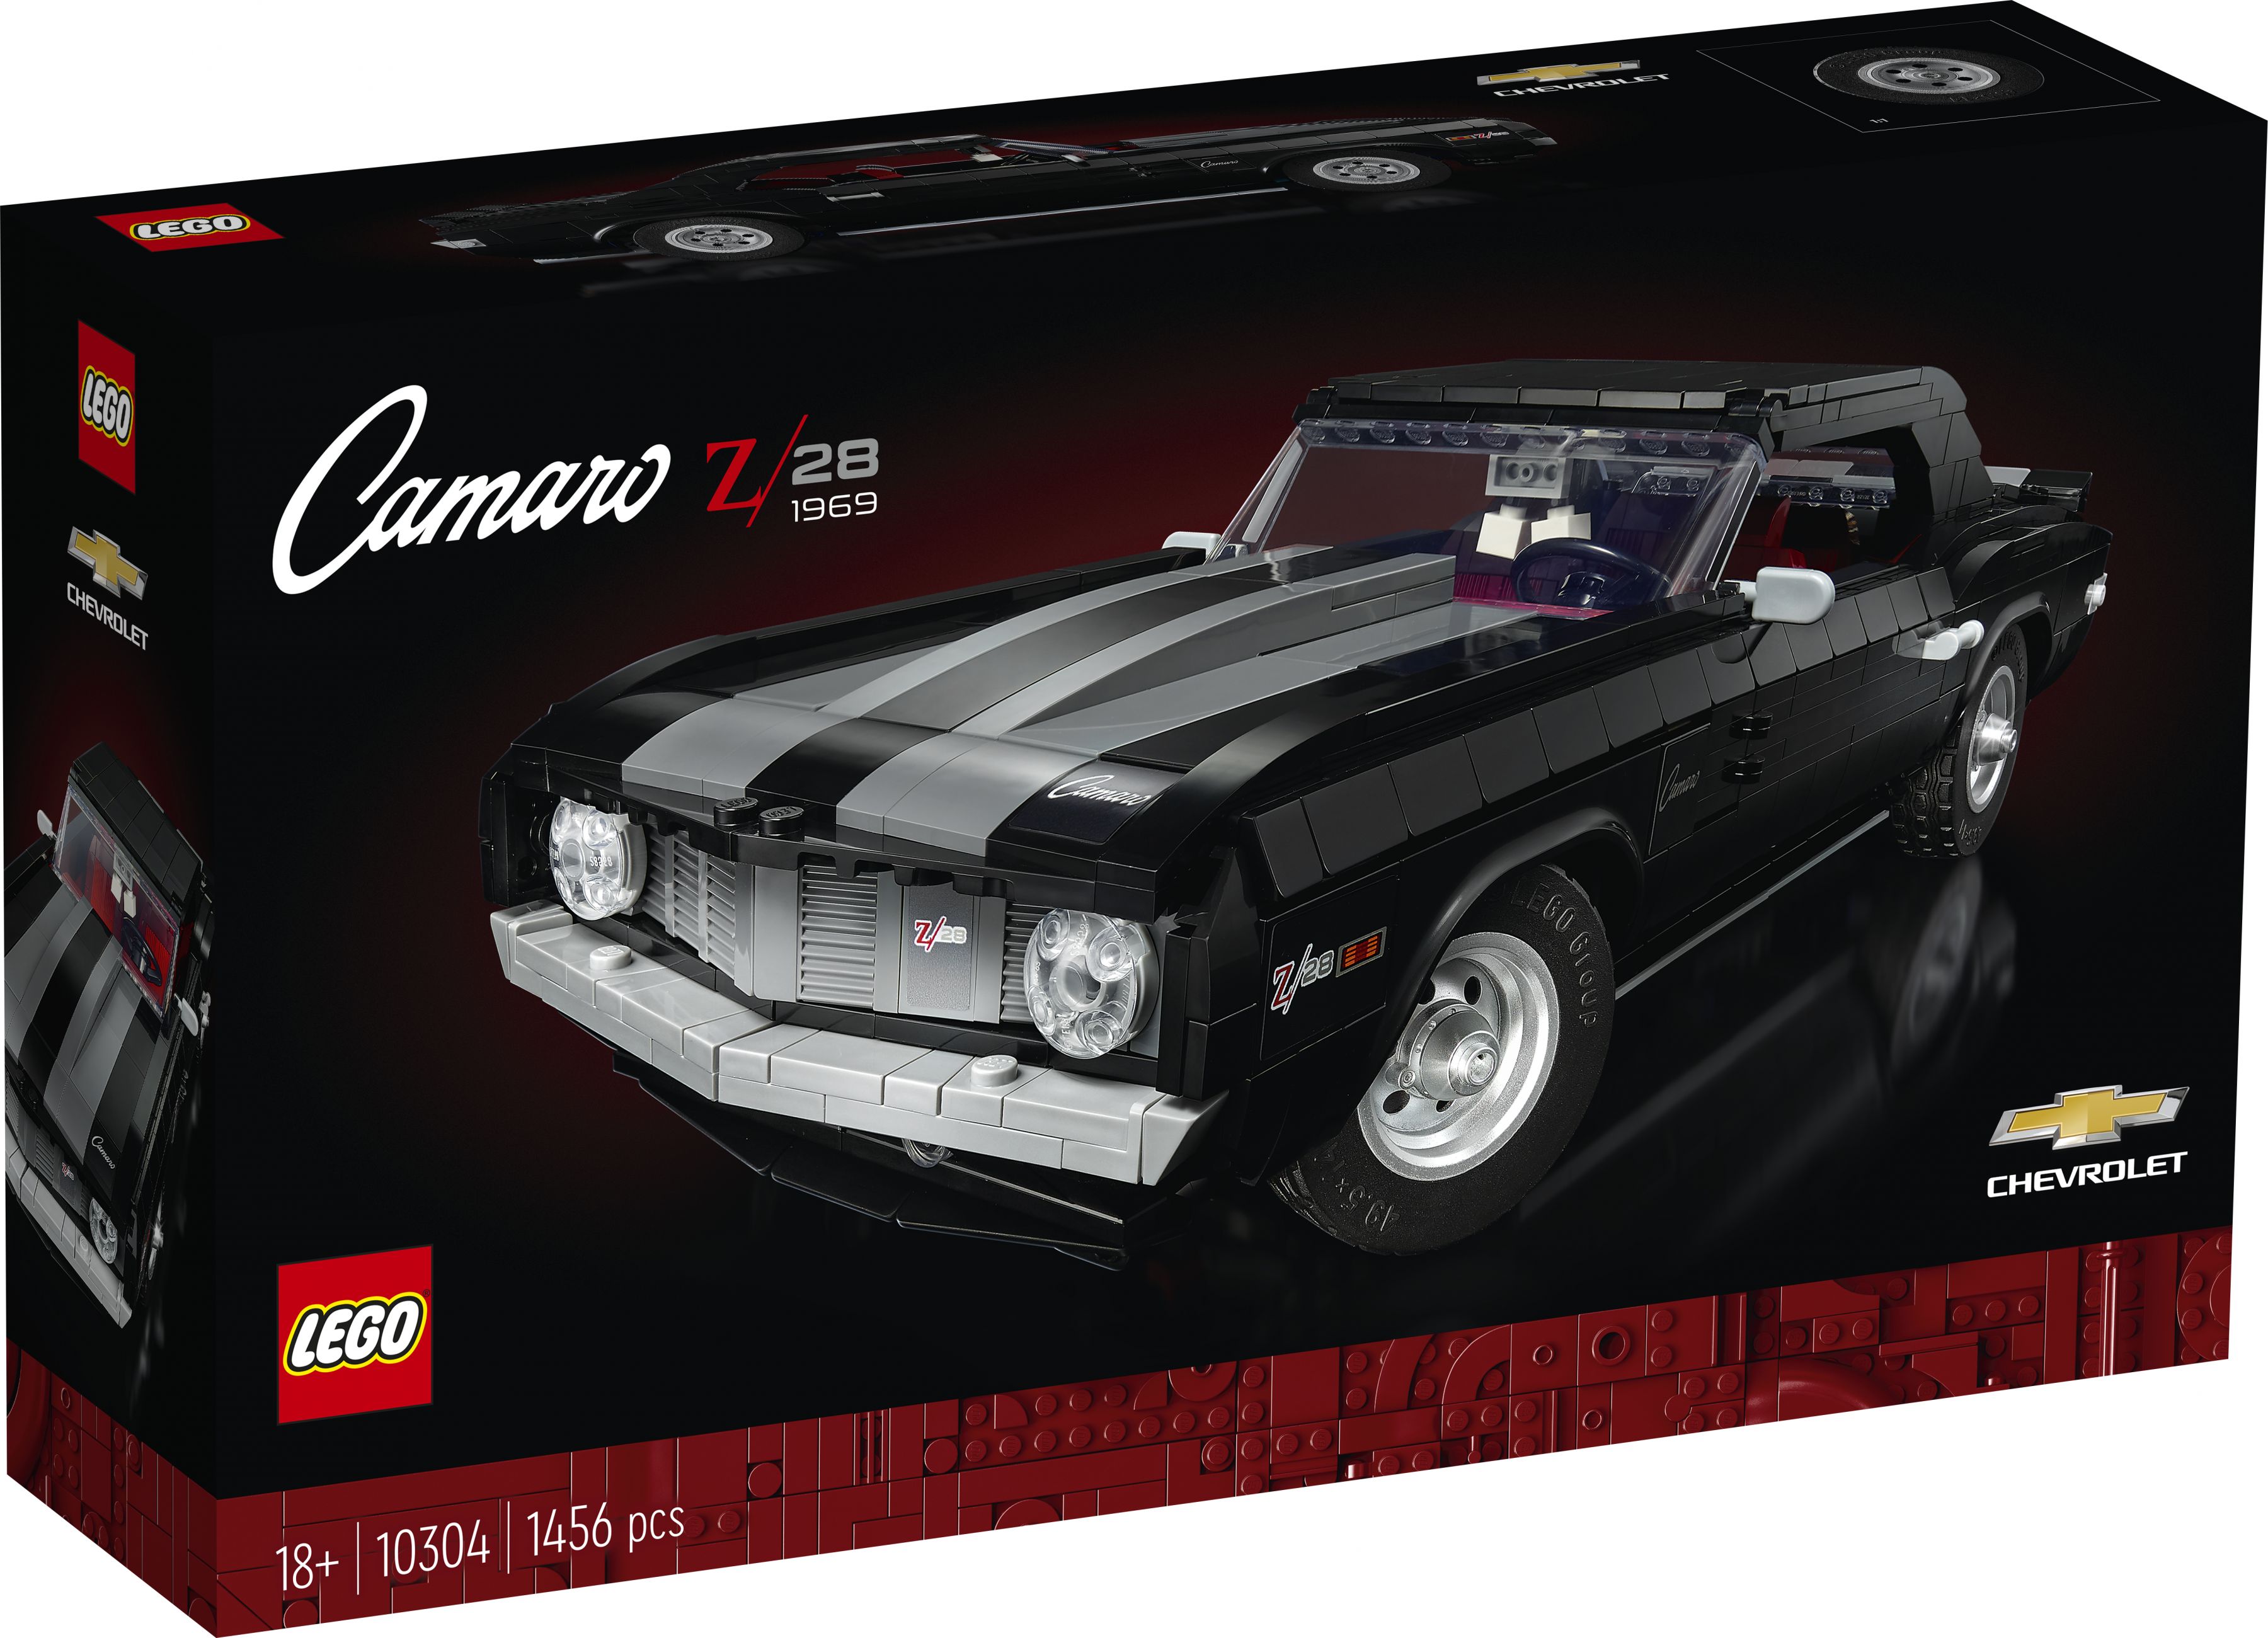 LEGO Advanced Models 10304 Chevrolet Camaro Z28 LEGO_10304_Box1_v29.jpg